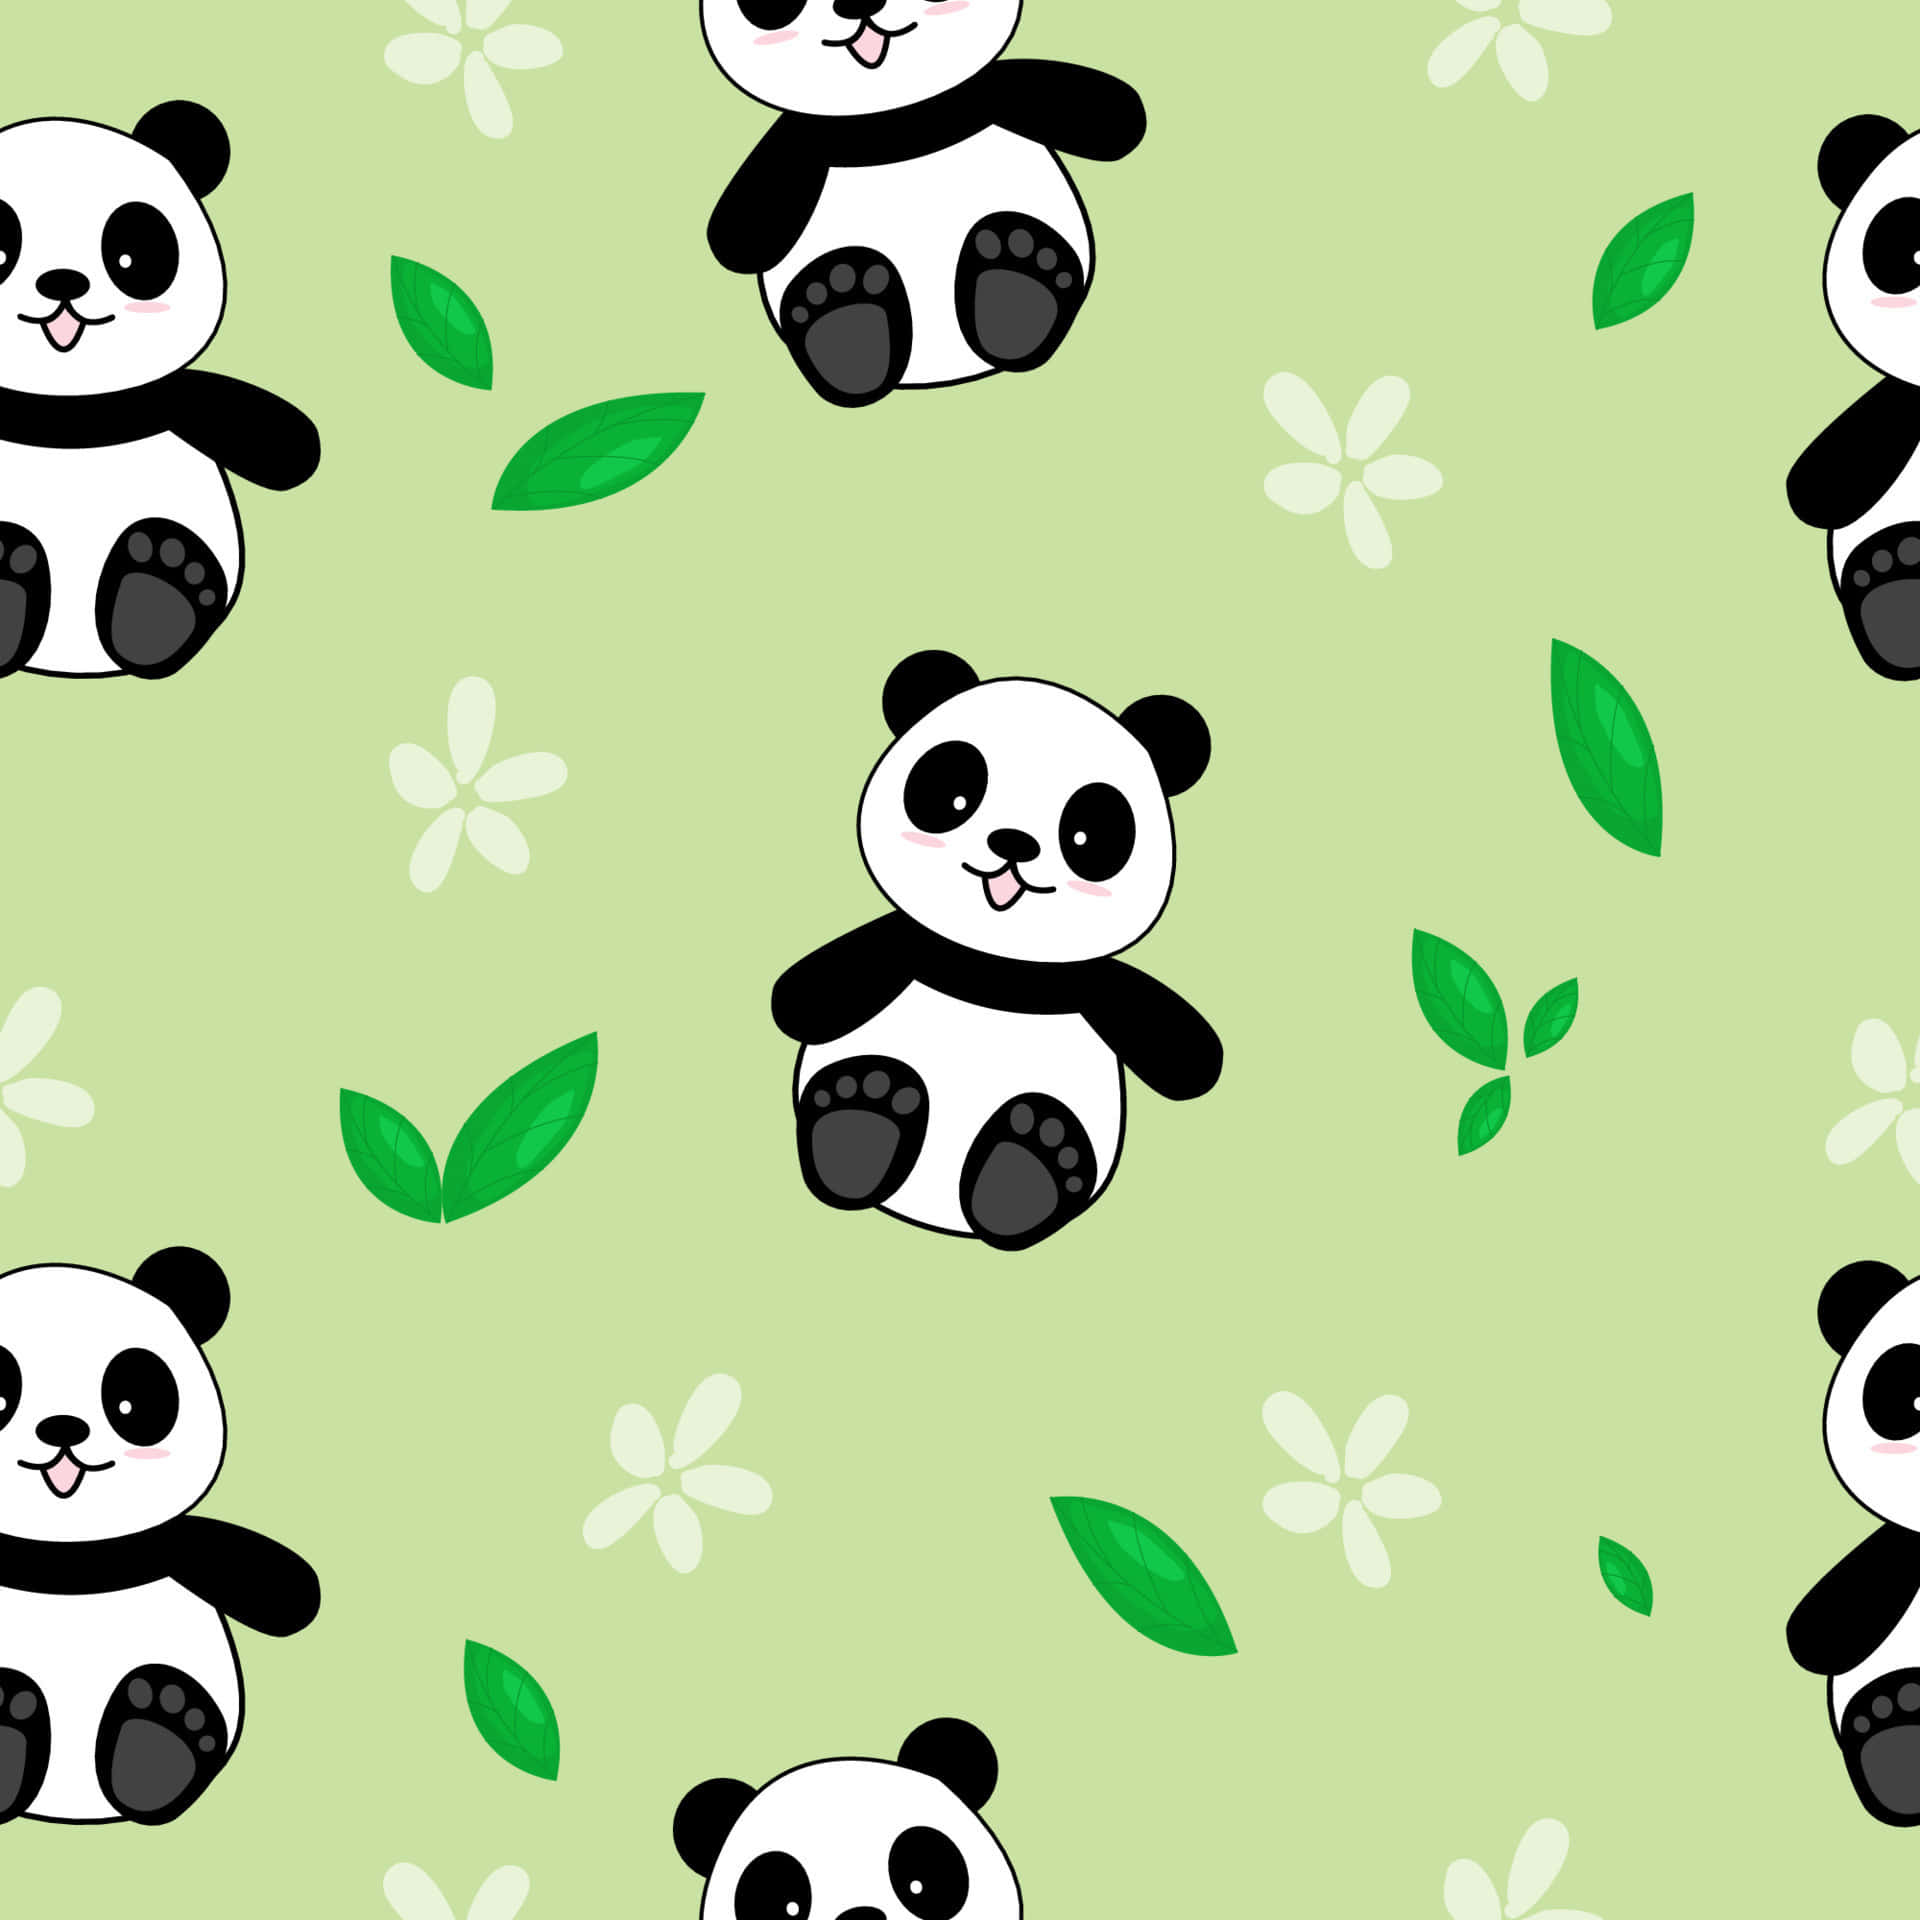 Pandafemminile - Carino E Colorato Sfondo